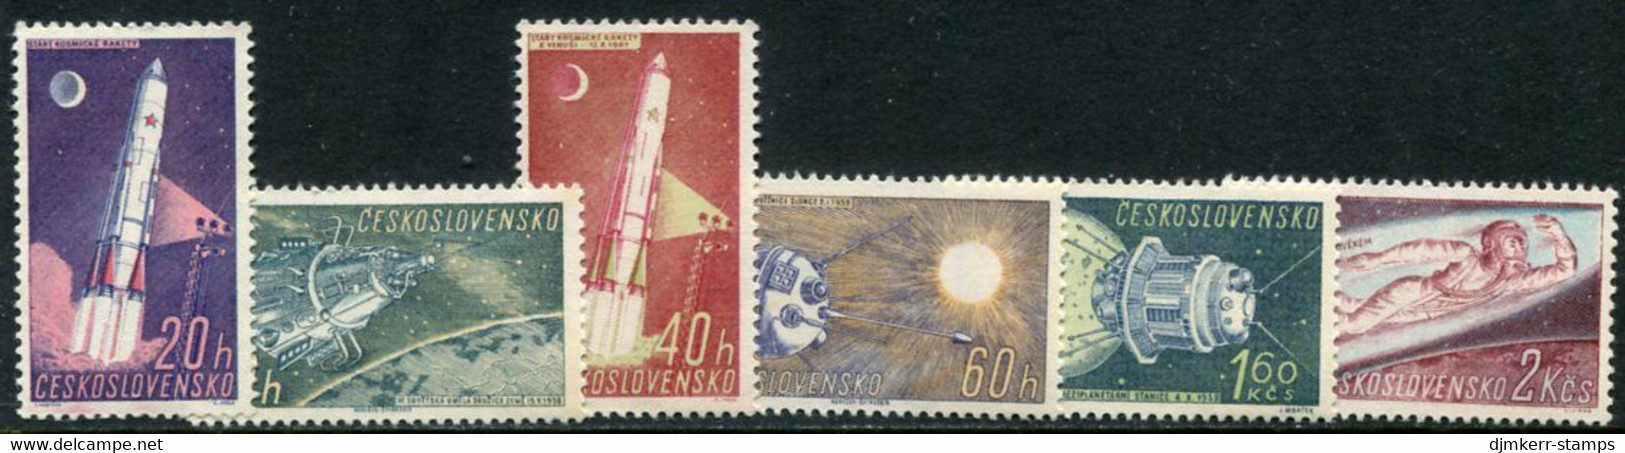 CZECHOSLOVAKIA 1961 Space Exploration MNH / **.  Michel 1252-57 - Nuovi